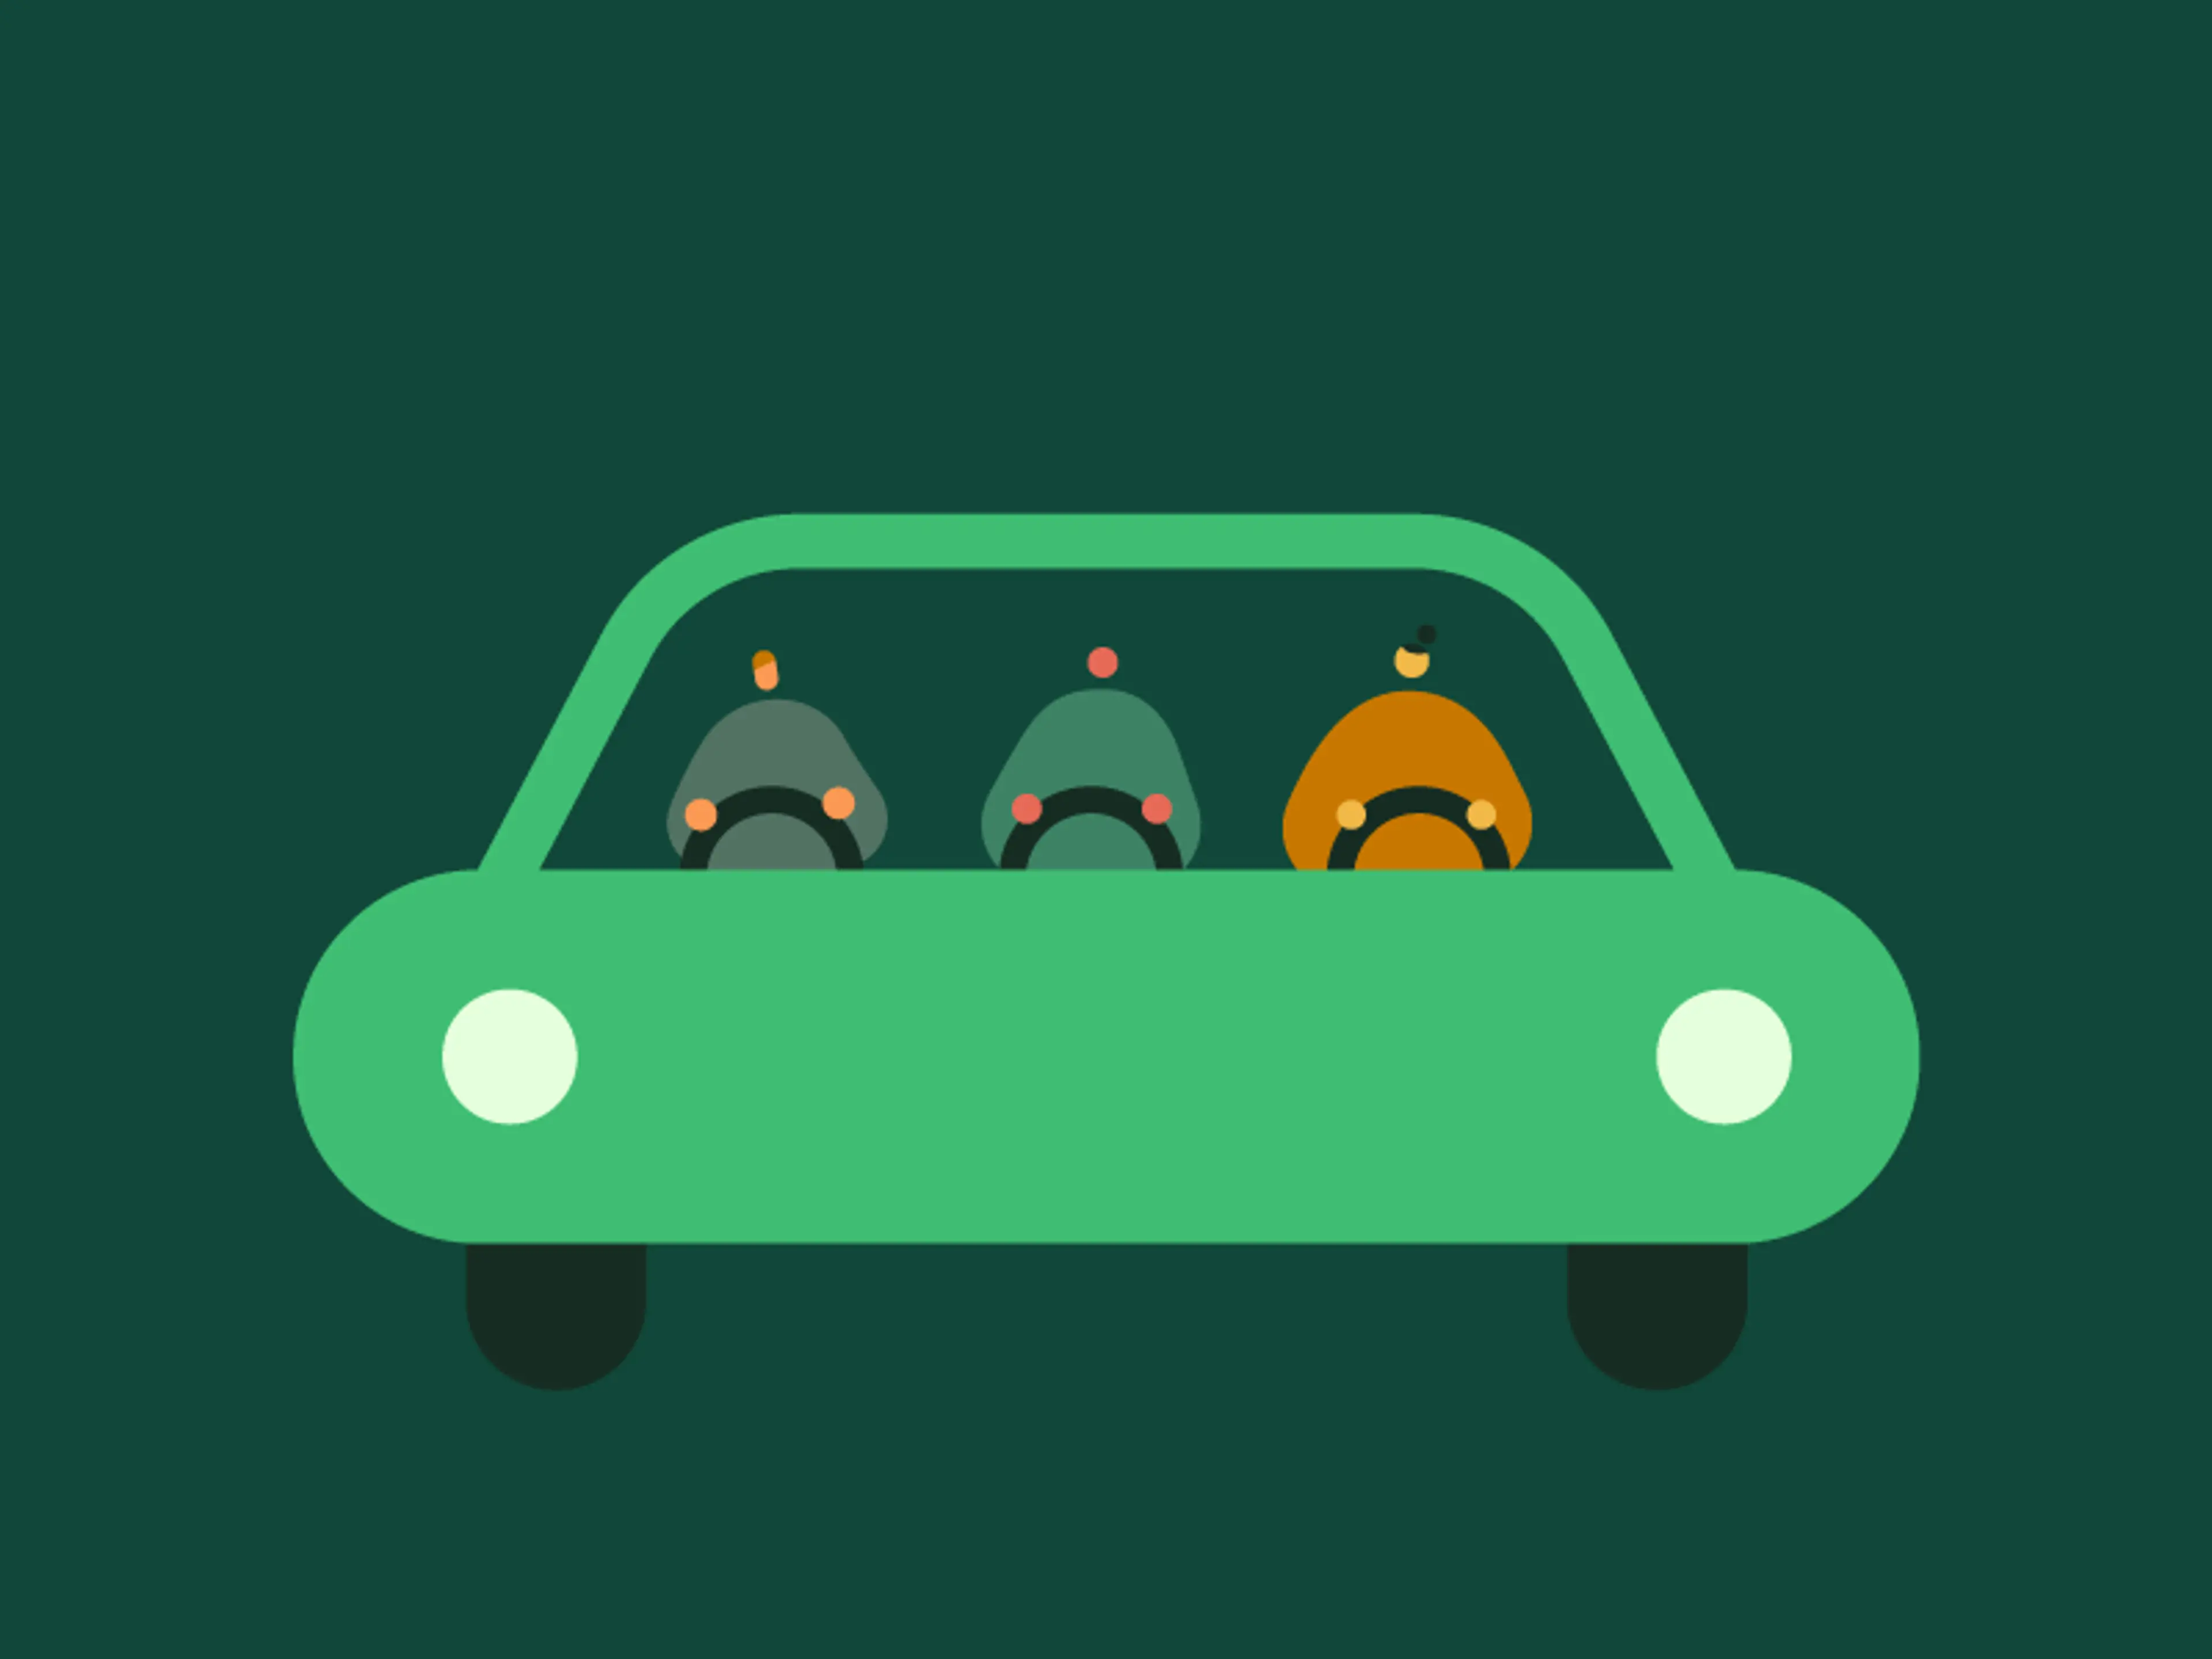 Grafikken viser 3 personer, der hjælper hinanden med at styre en bil